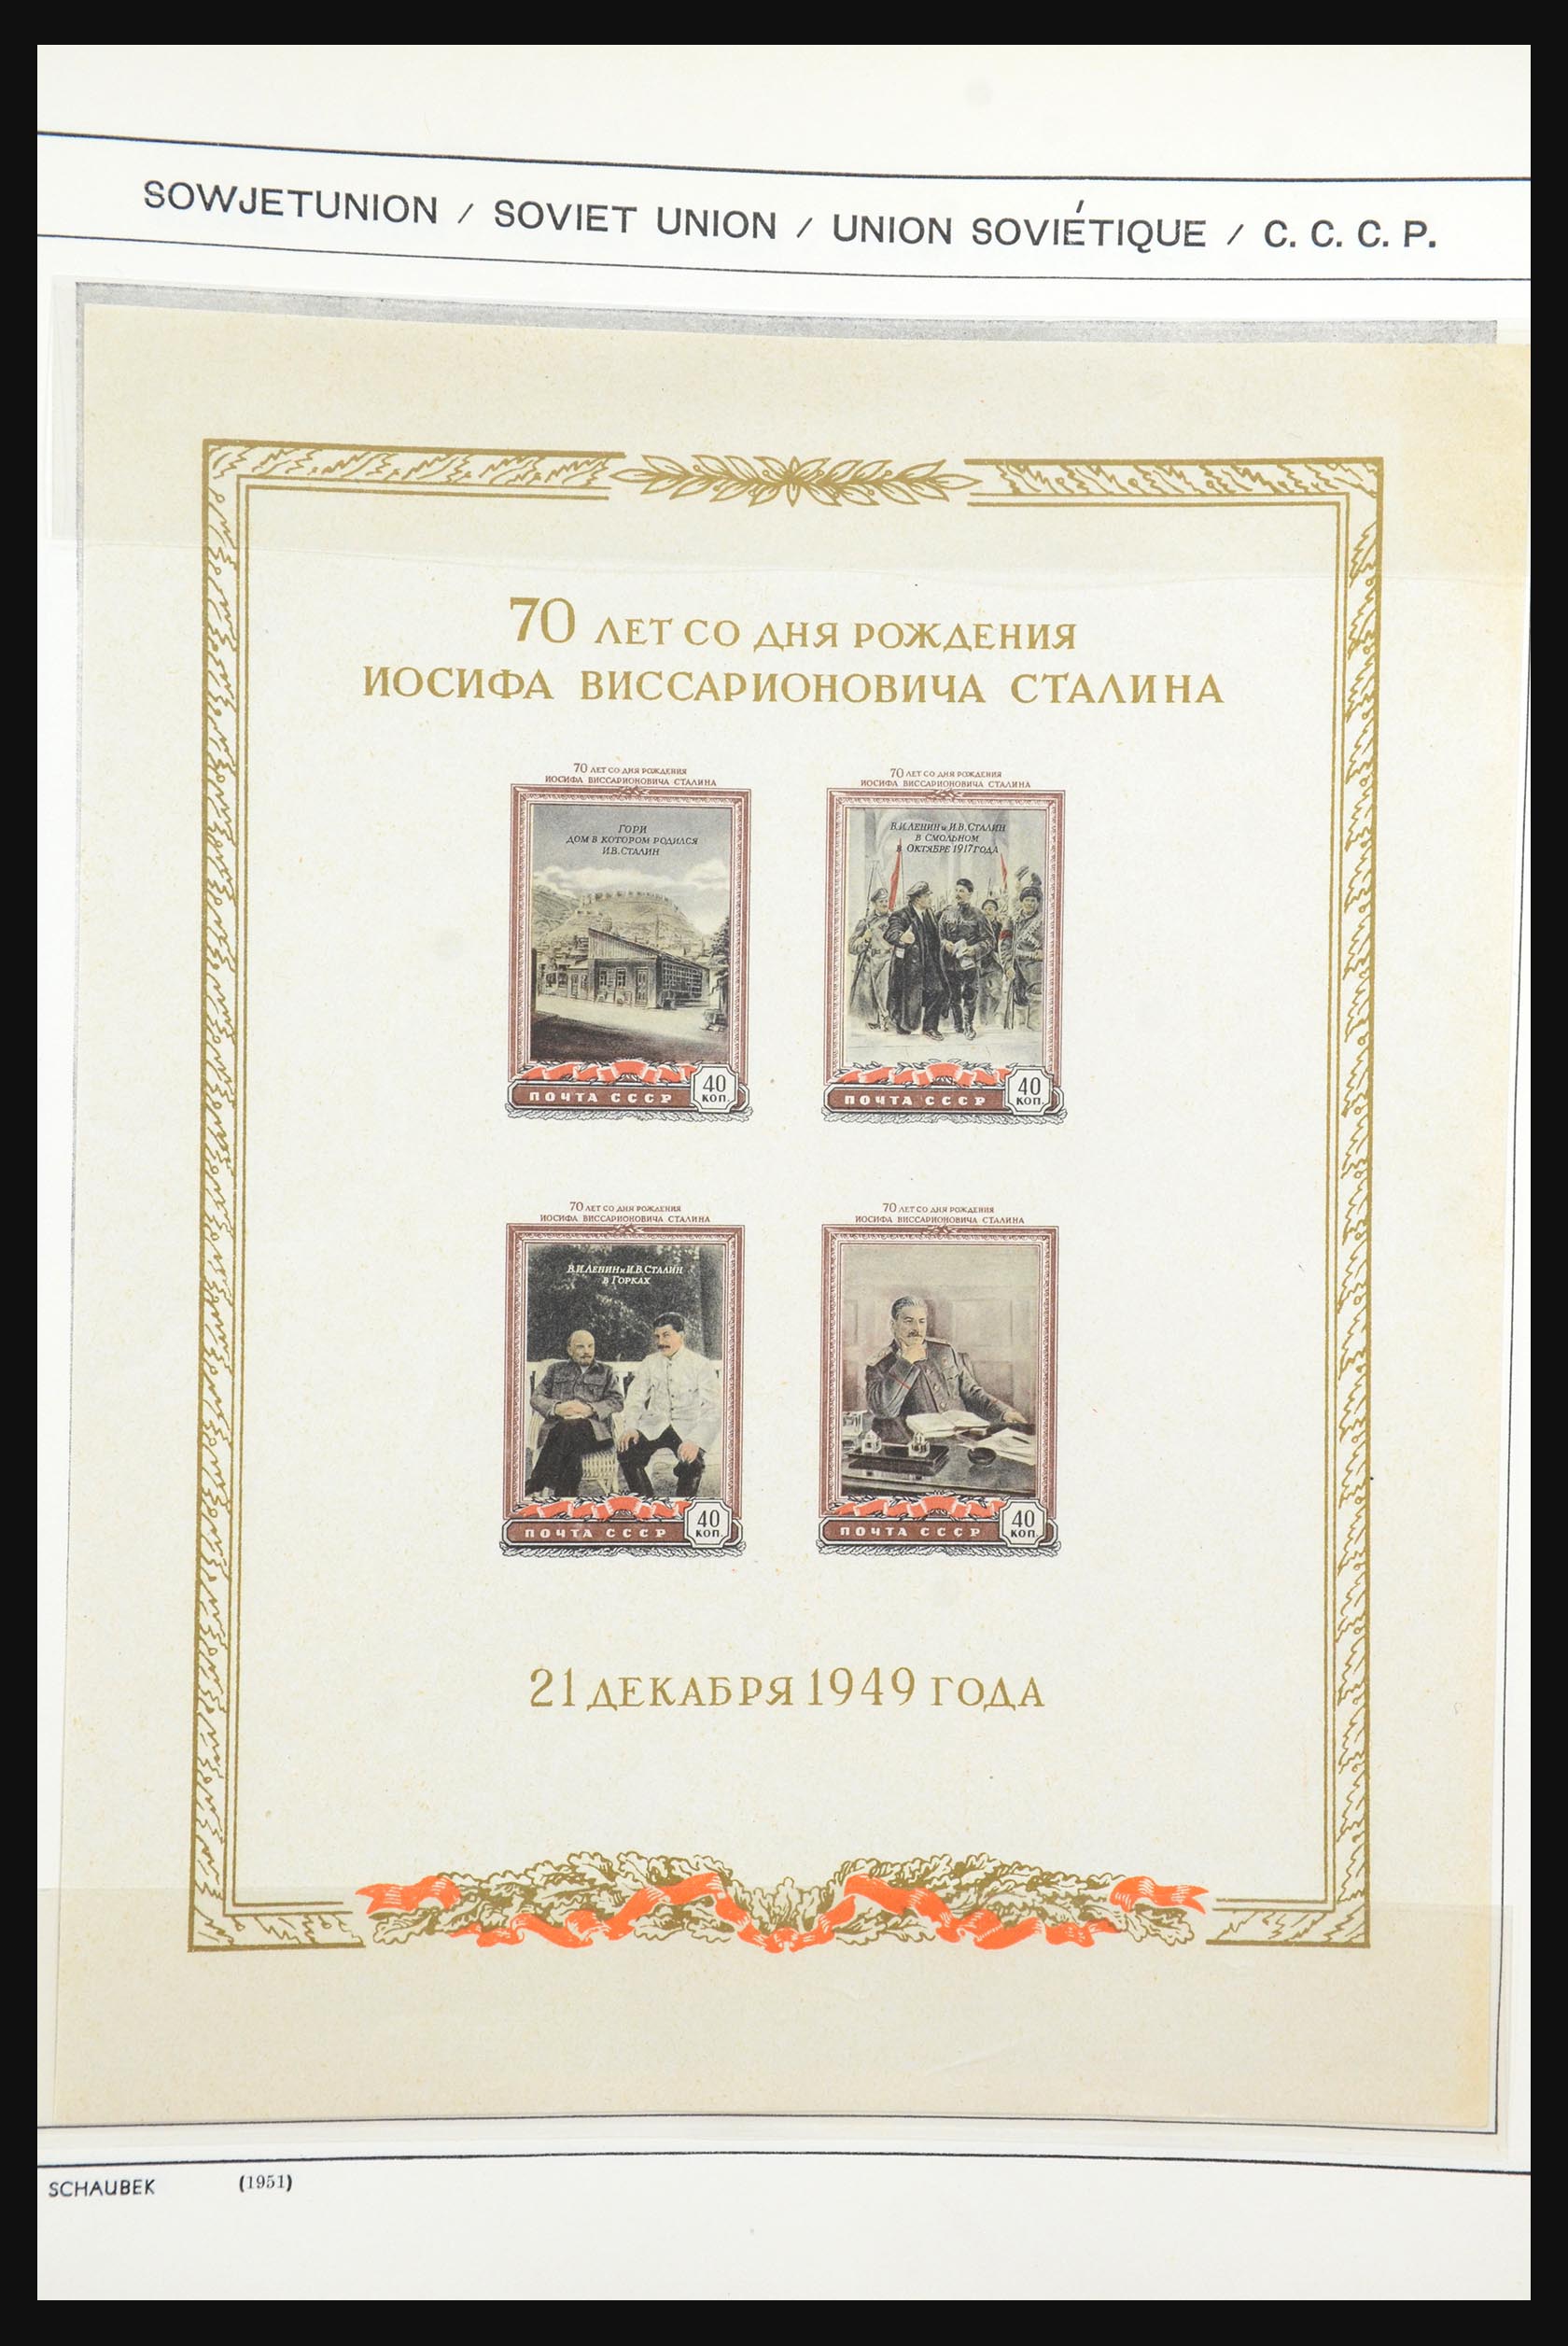 31651 211 - 31651 Russia 1858-1959.